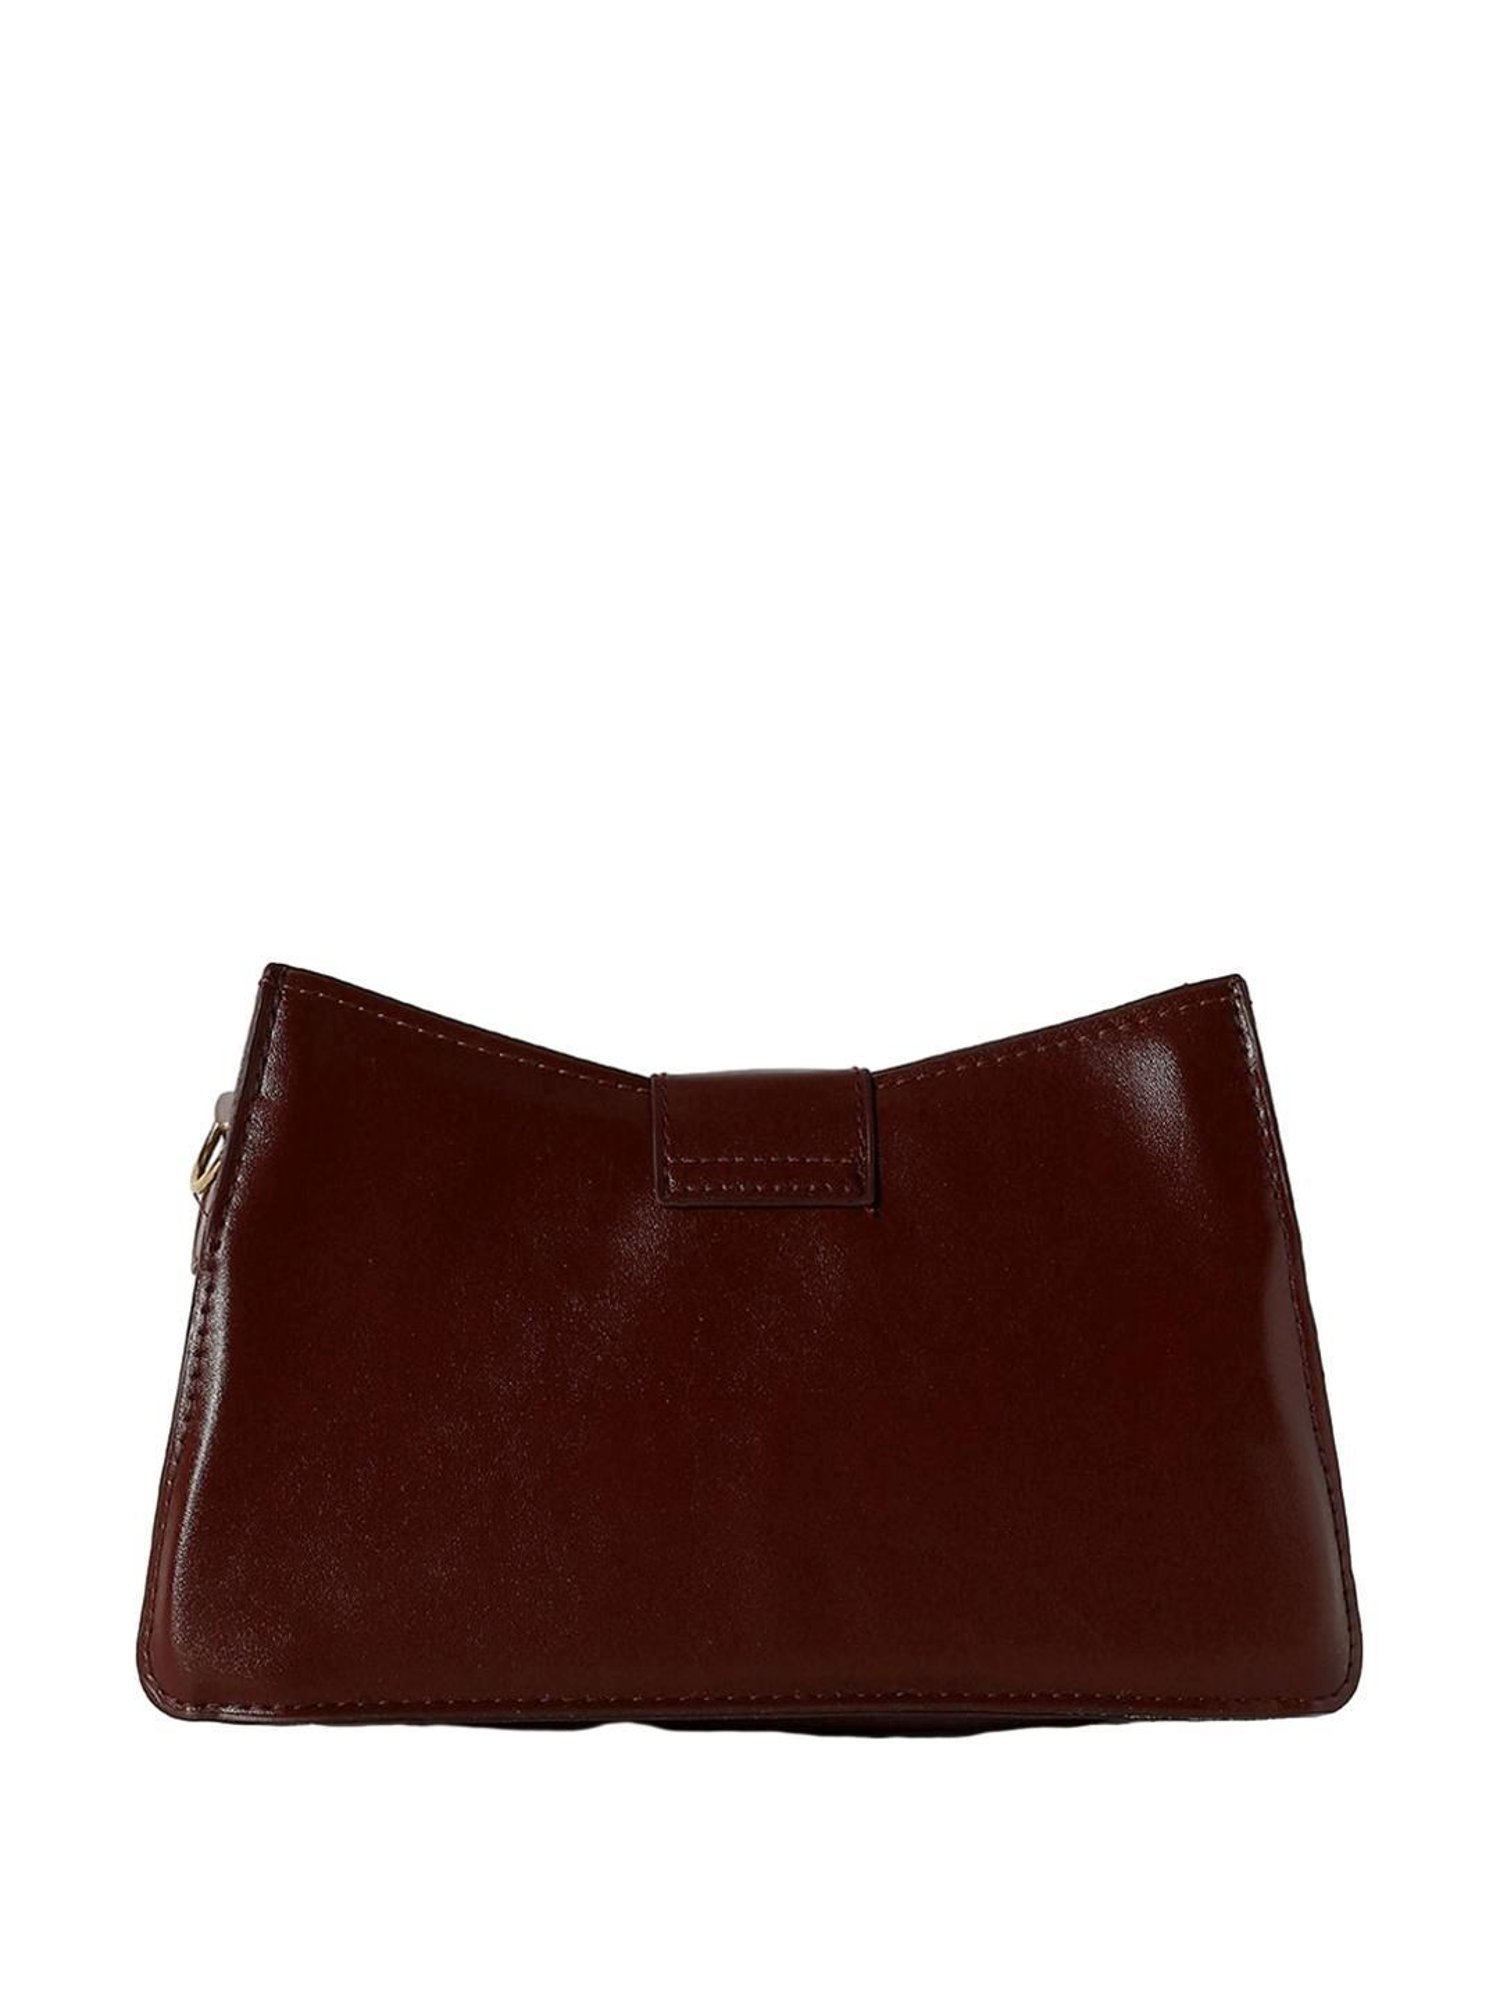 Monsac Original Vintage Cognac Brown Leather Shoulder Bag Handbag Purse  Pockets | eBay